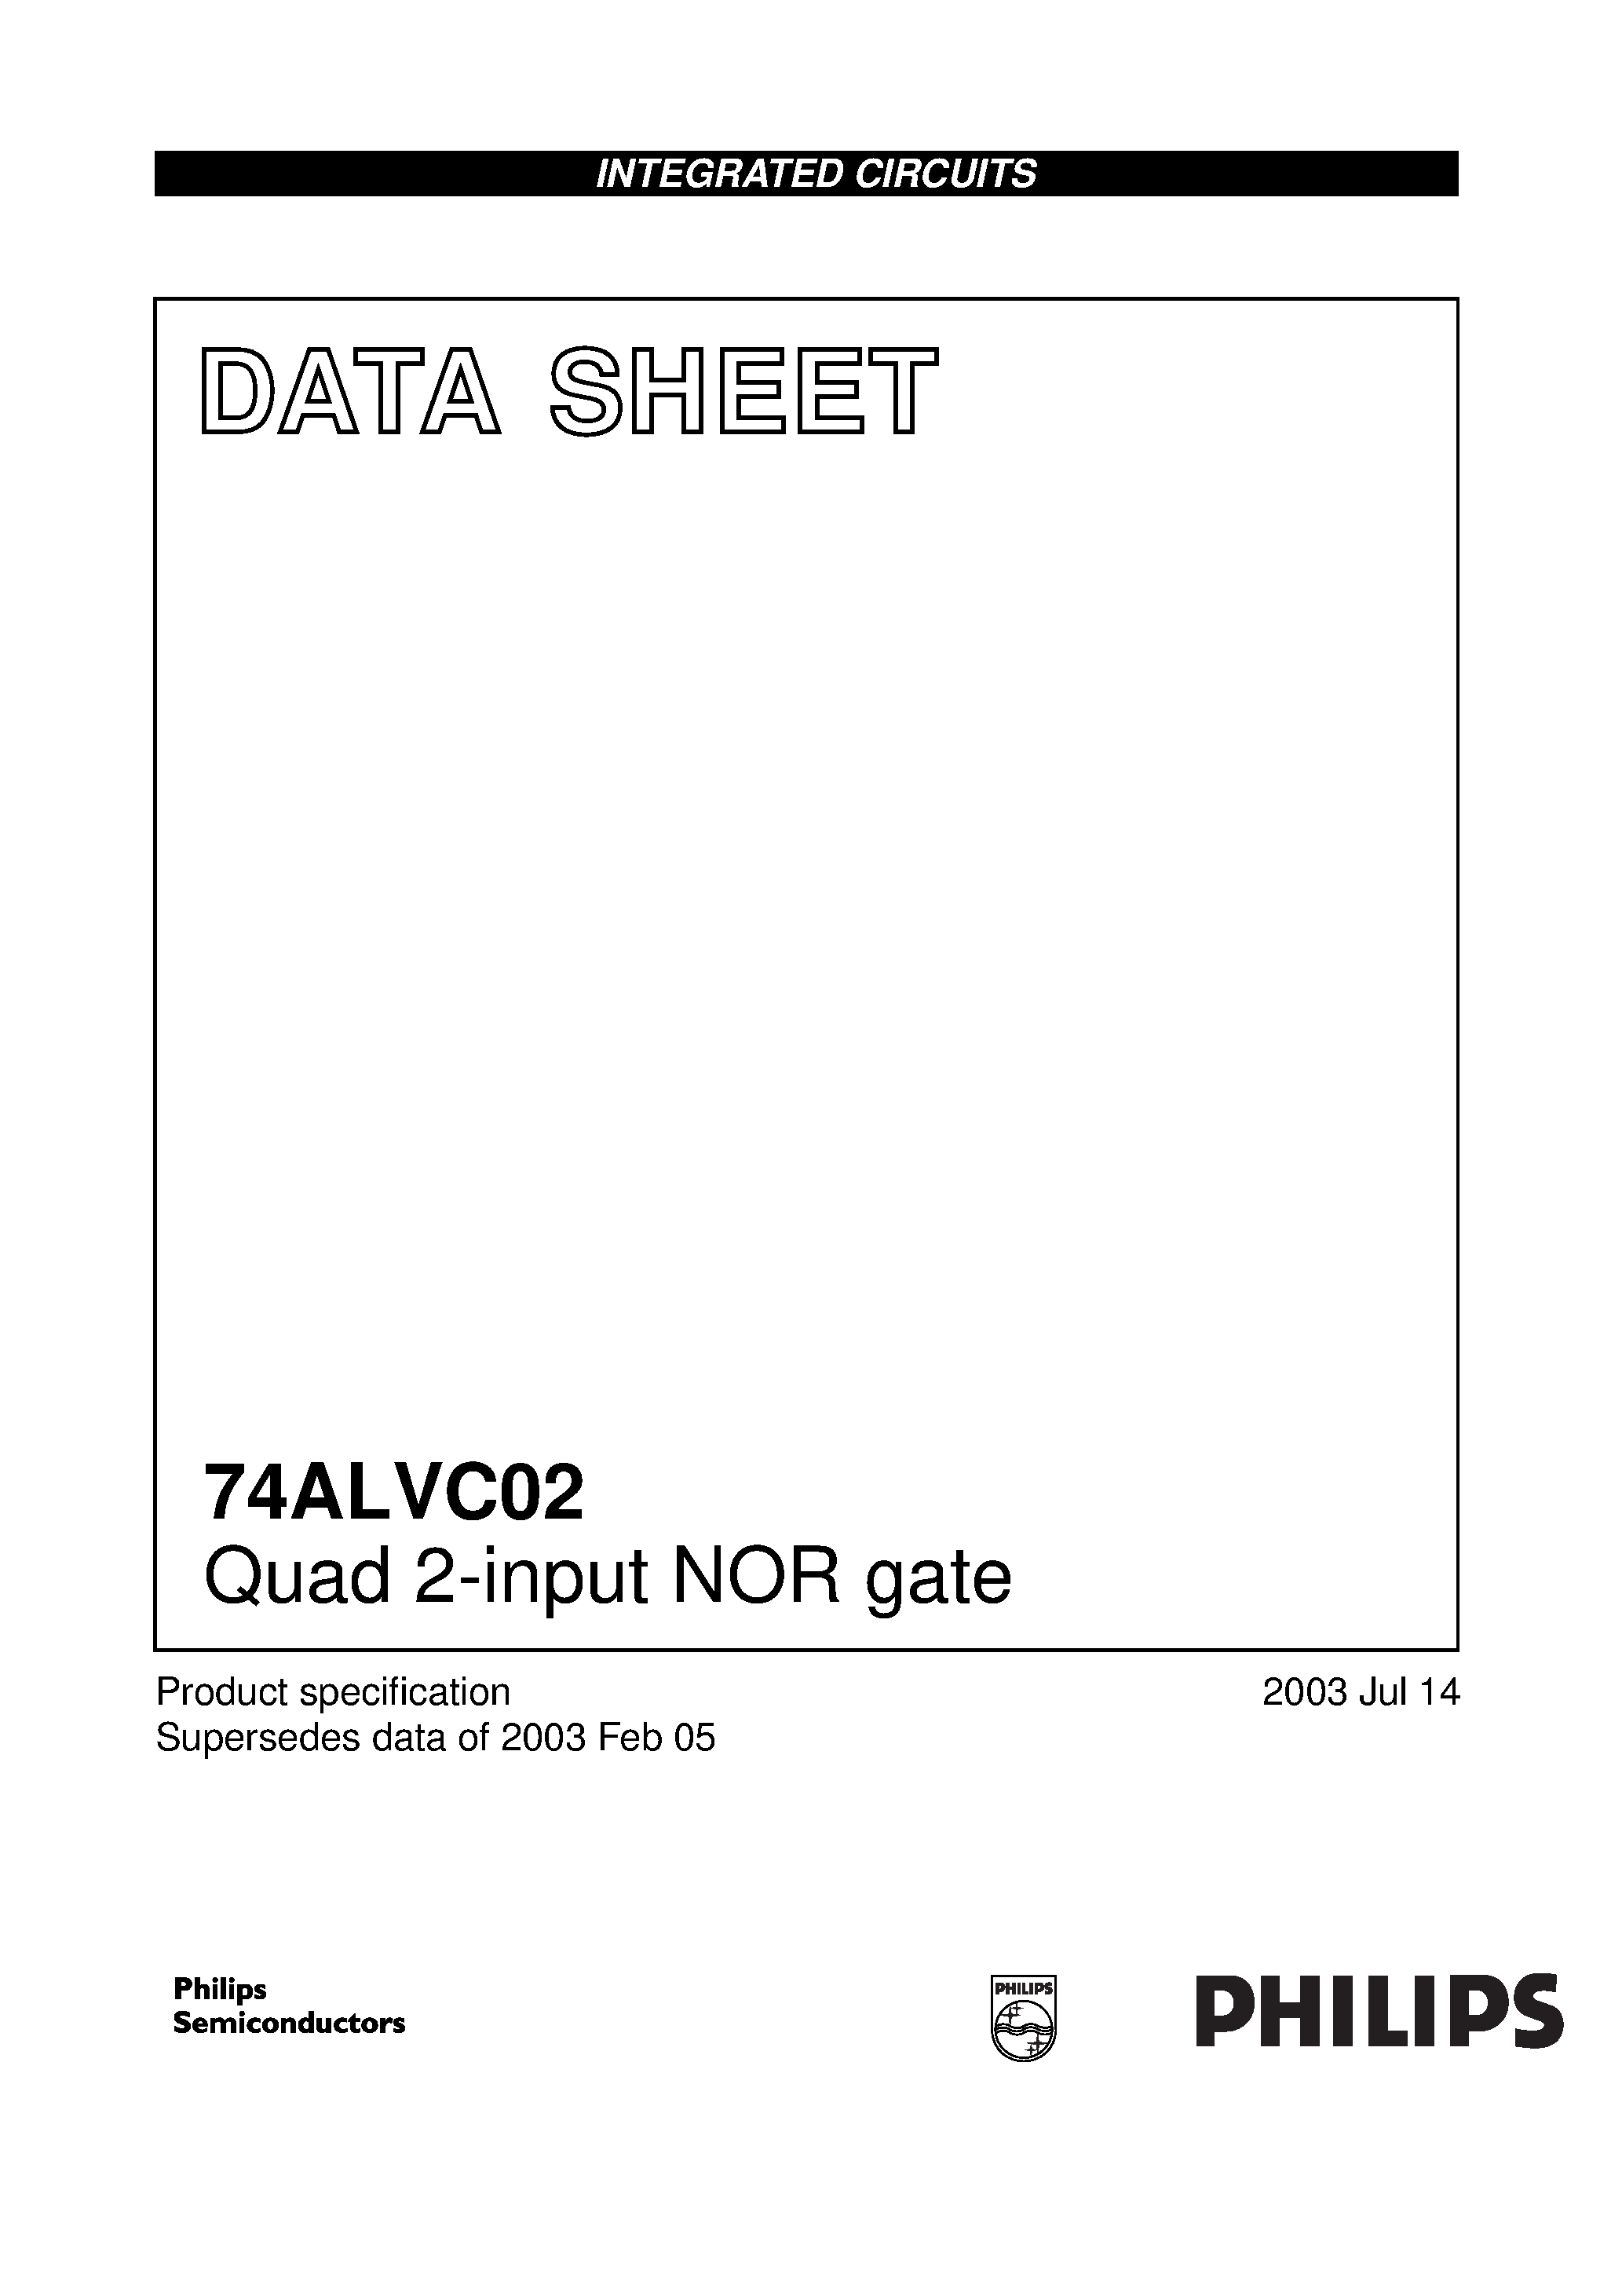 Даташит 74ALVC02 - Quad 2-input NOR gate страница 1